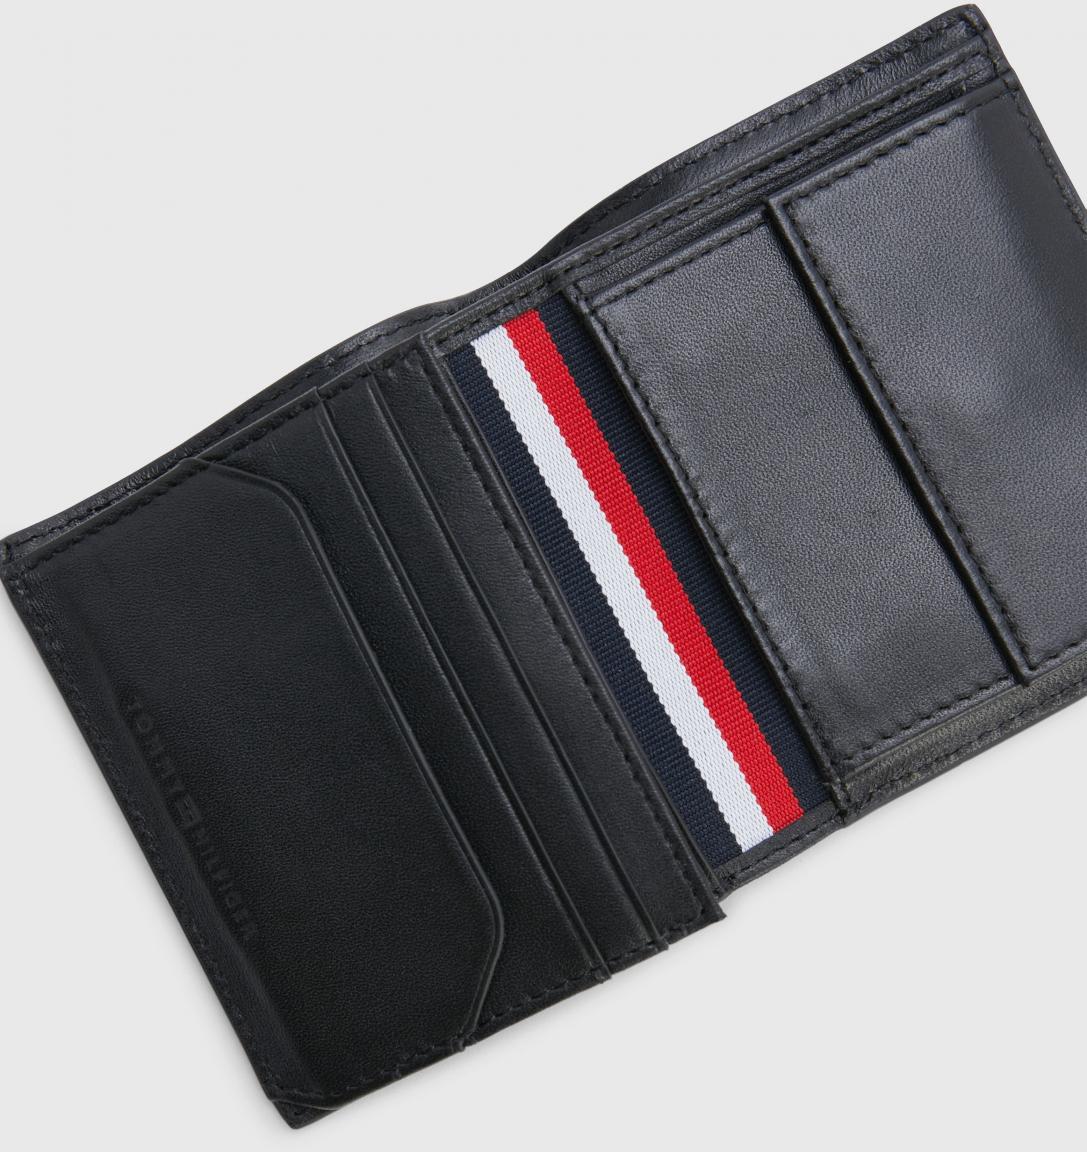 Geldbörse Herren echtes Leder Tommy Hilfiger TH Prem Leather Trifold RFID Schutz